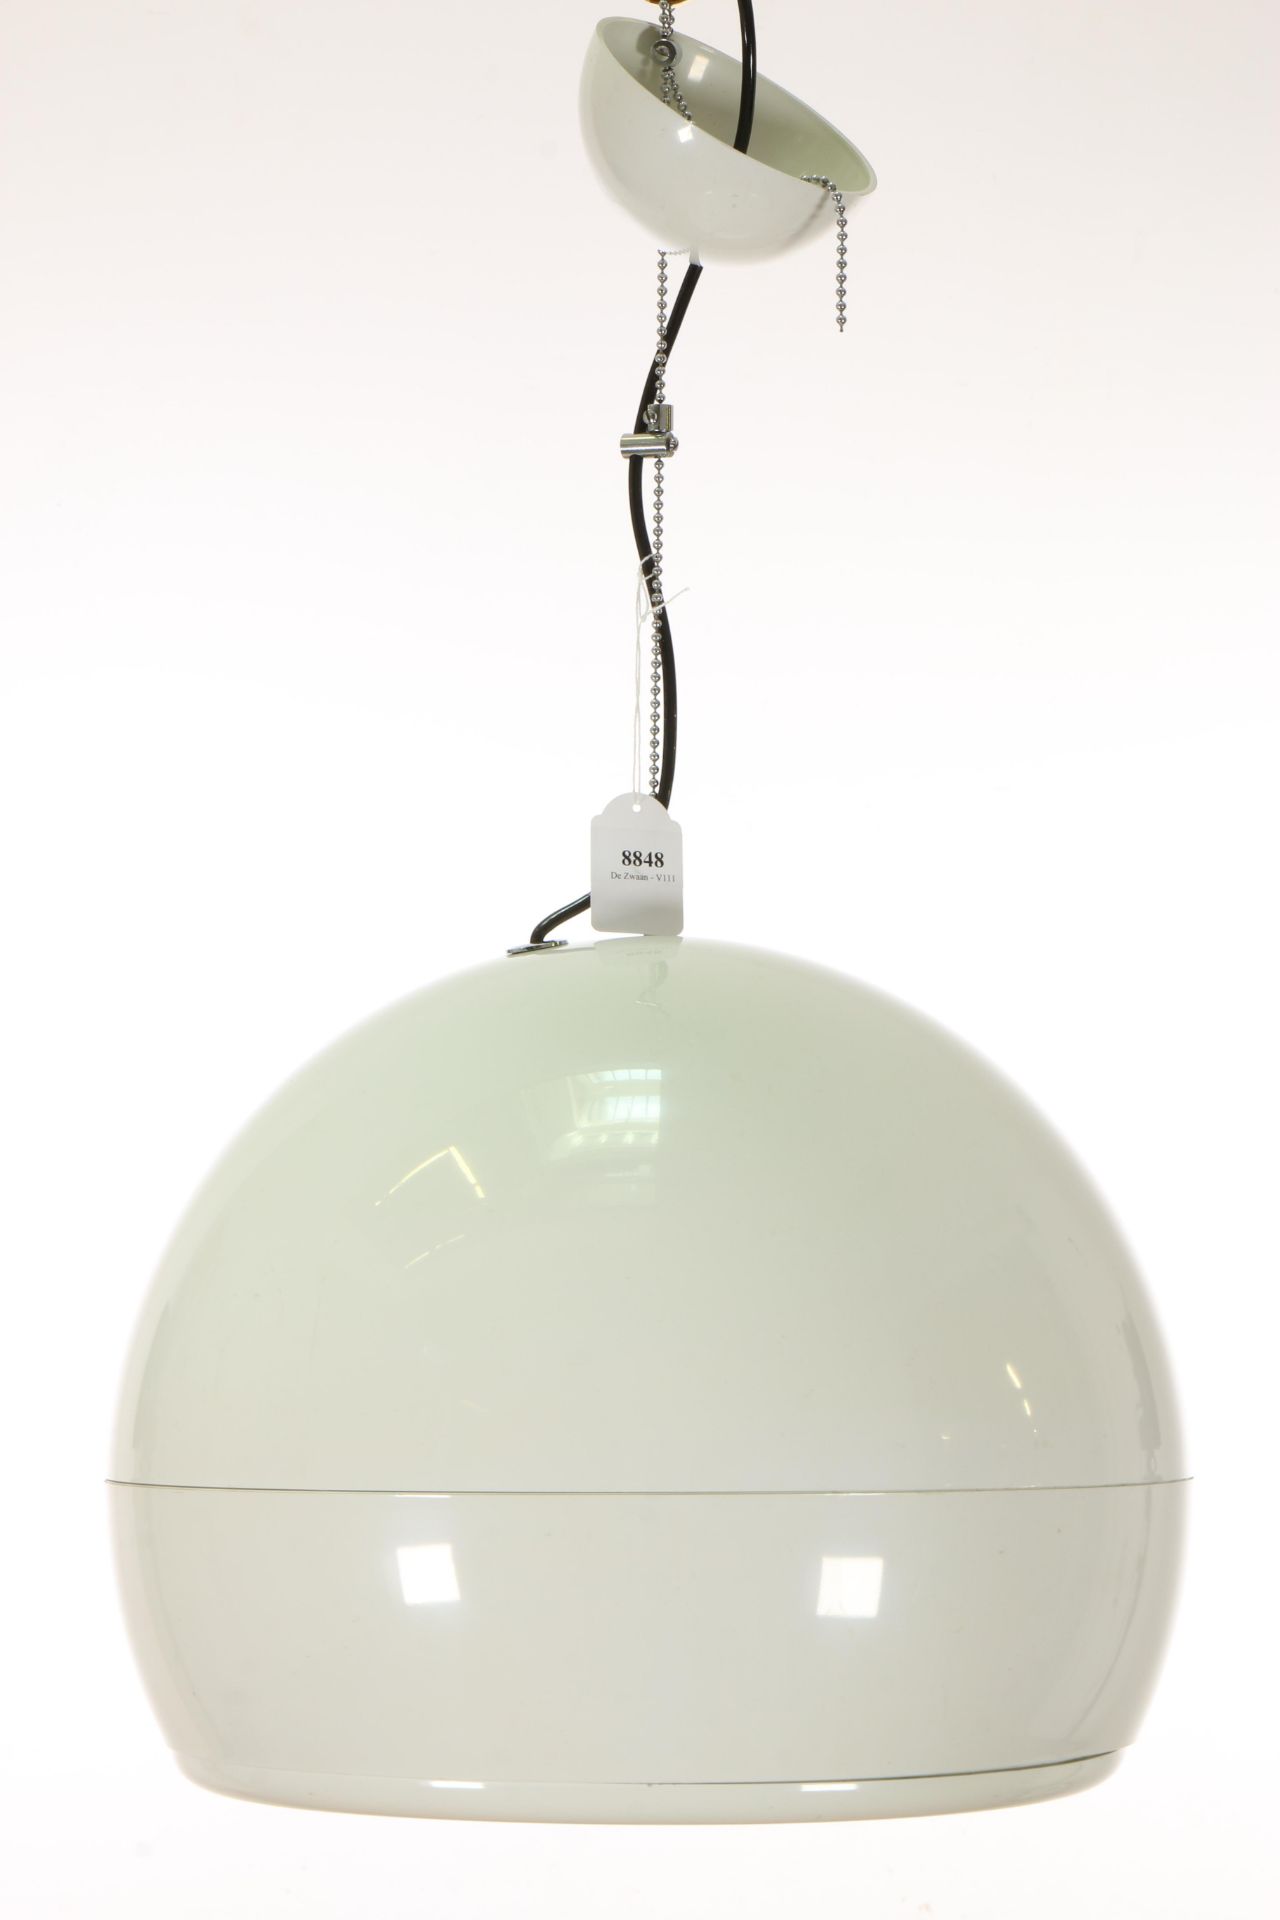 Studio Tetrarch voor Artemide, Italië, wit kunststoffen 'Pallade' hanglamp, ontwerp 1968 - Bild 2 aus 2